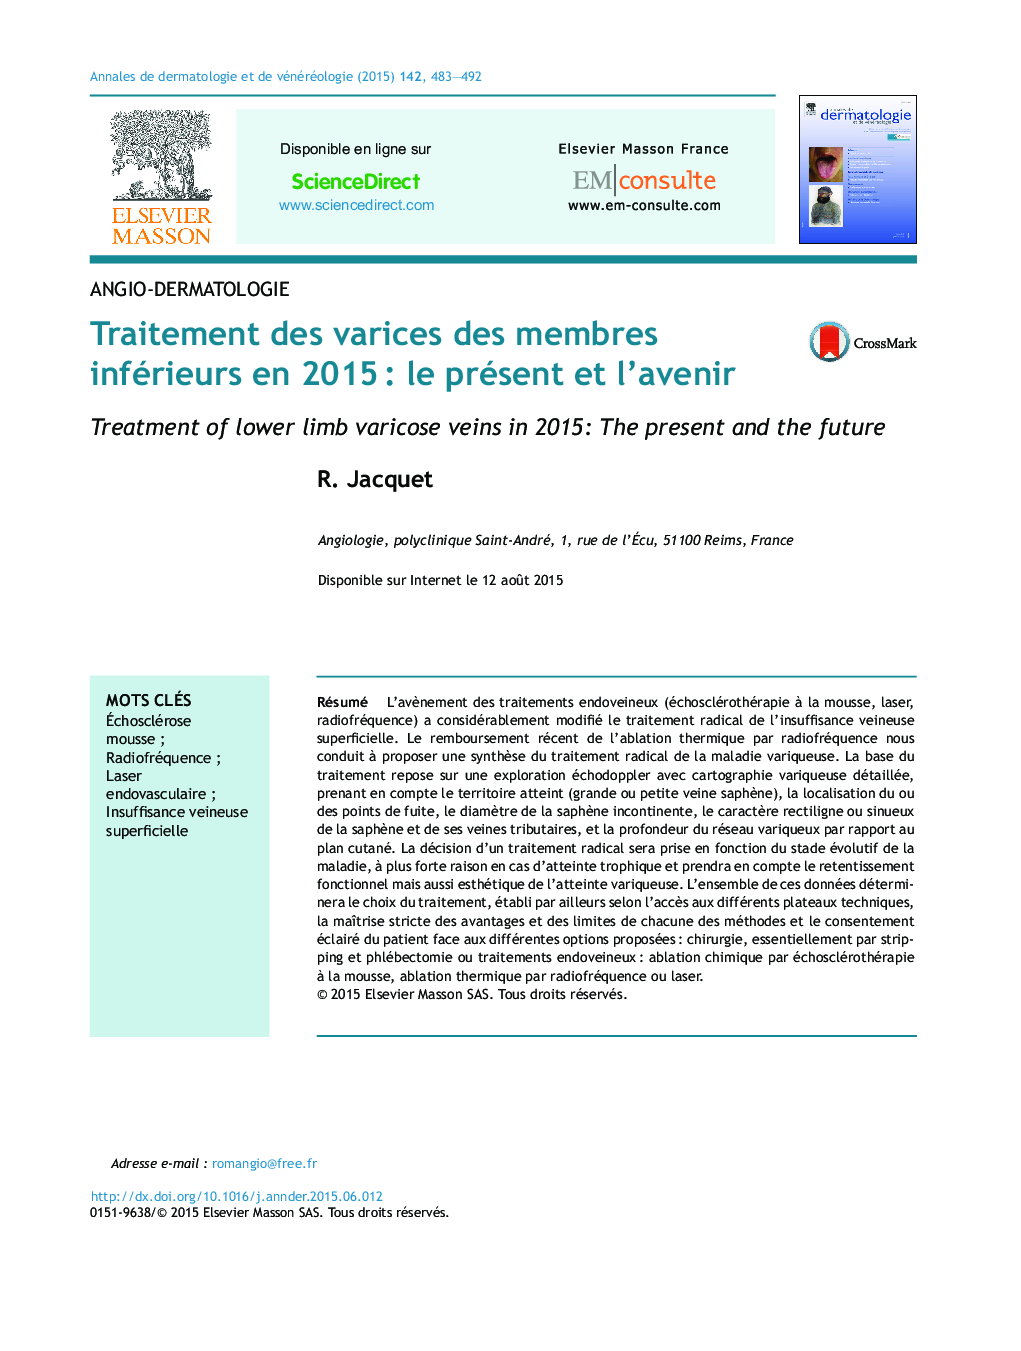 Traitement des varices des membres inférieurs en 2015Â : le présent et l'avenir